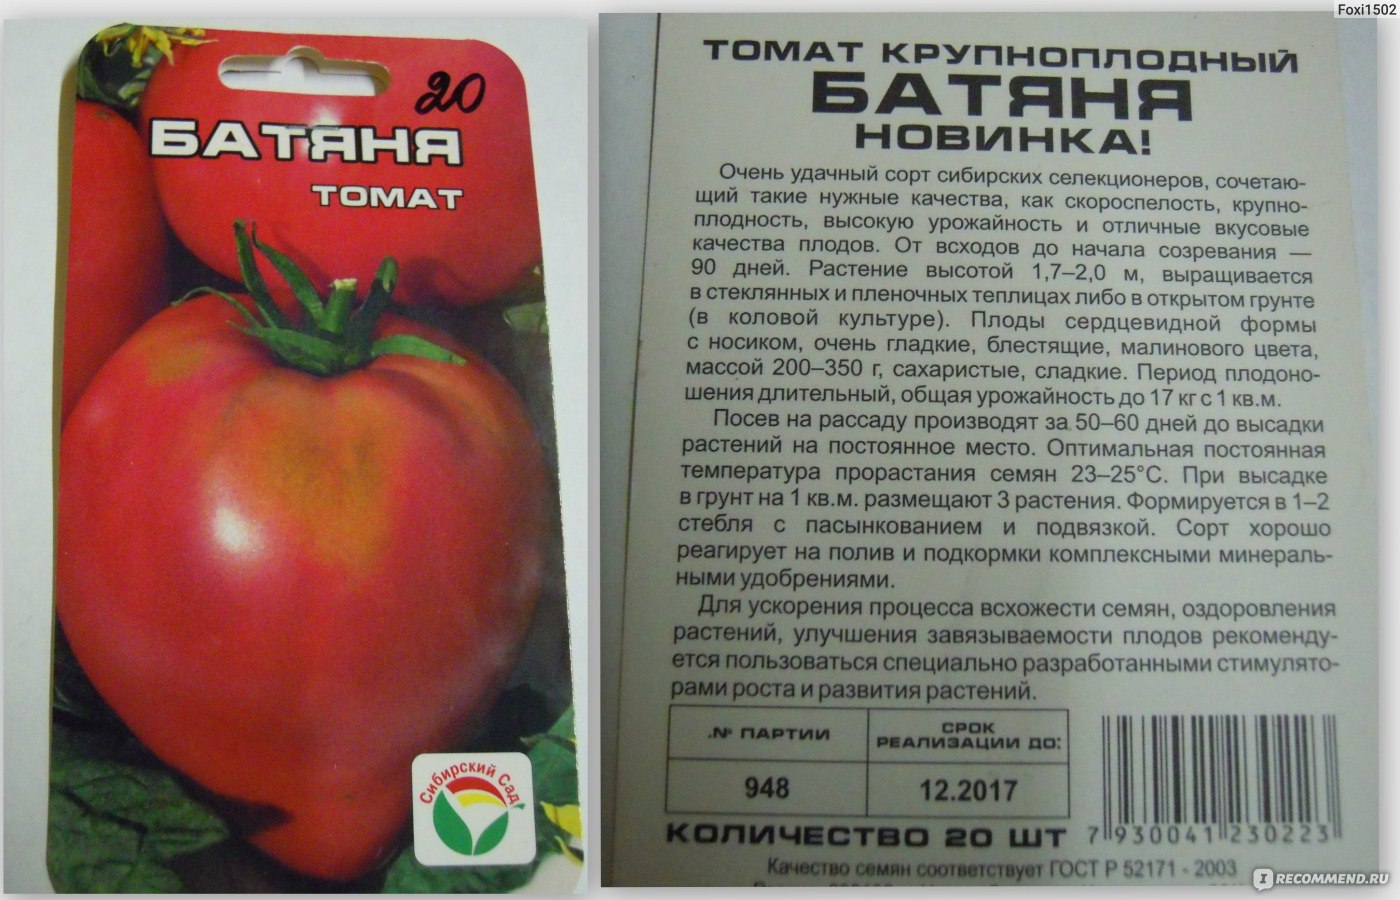 Сорт мясистый сахаристый – крупноплодный розовый томат великолепных вкусовых характеристик: описание и отзывы